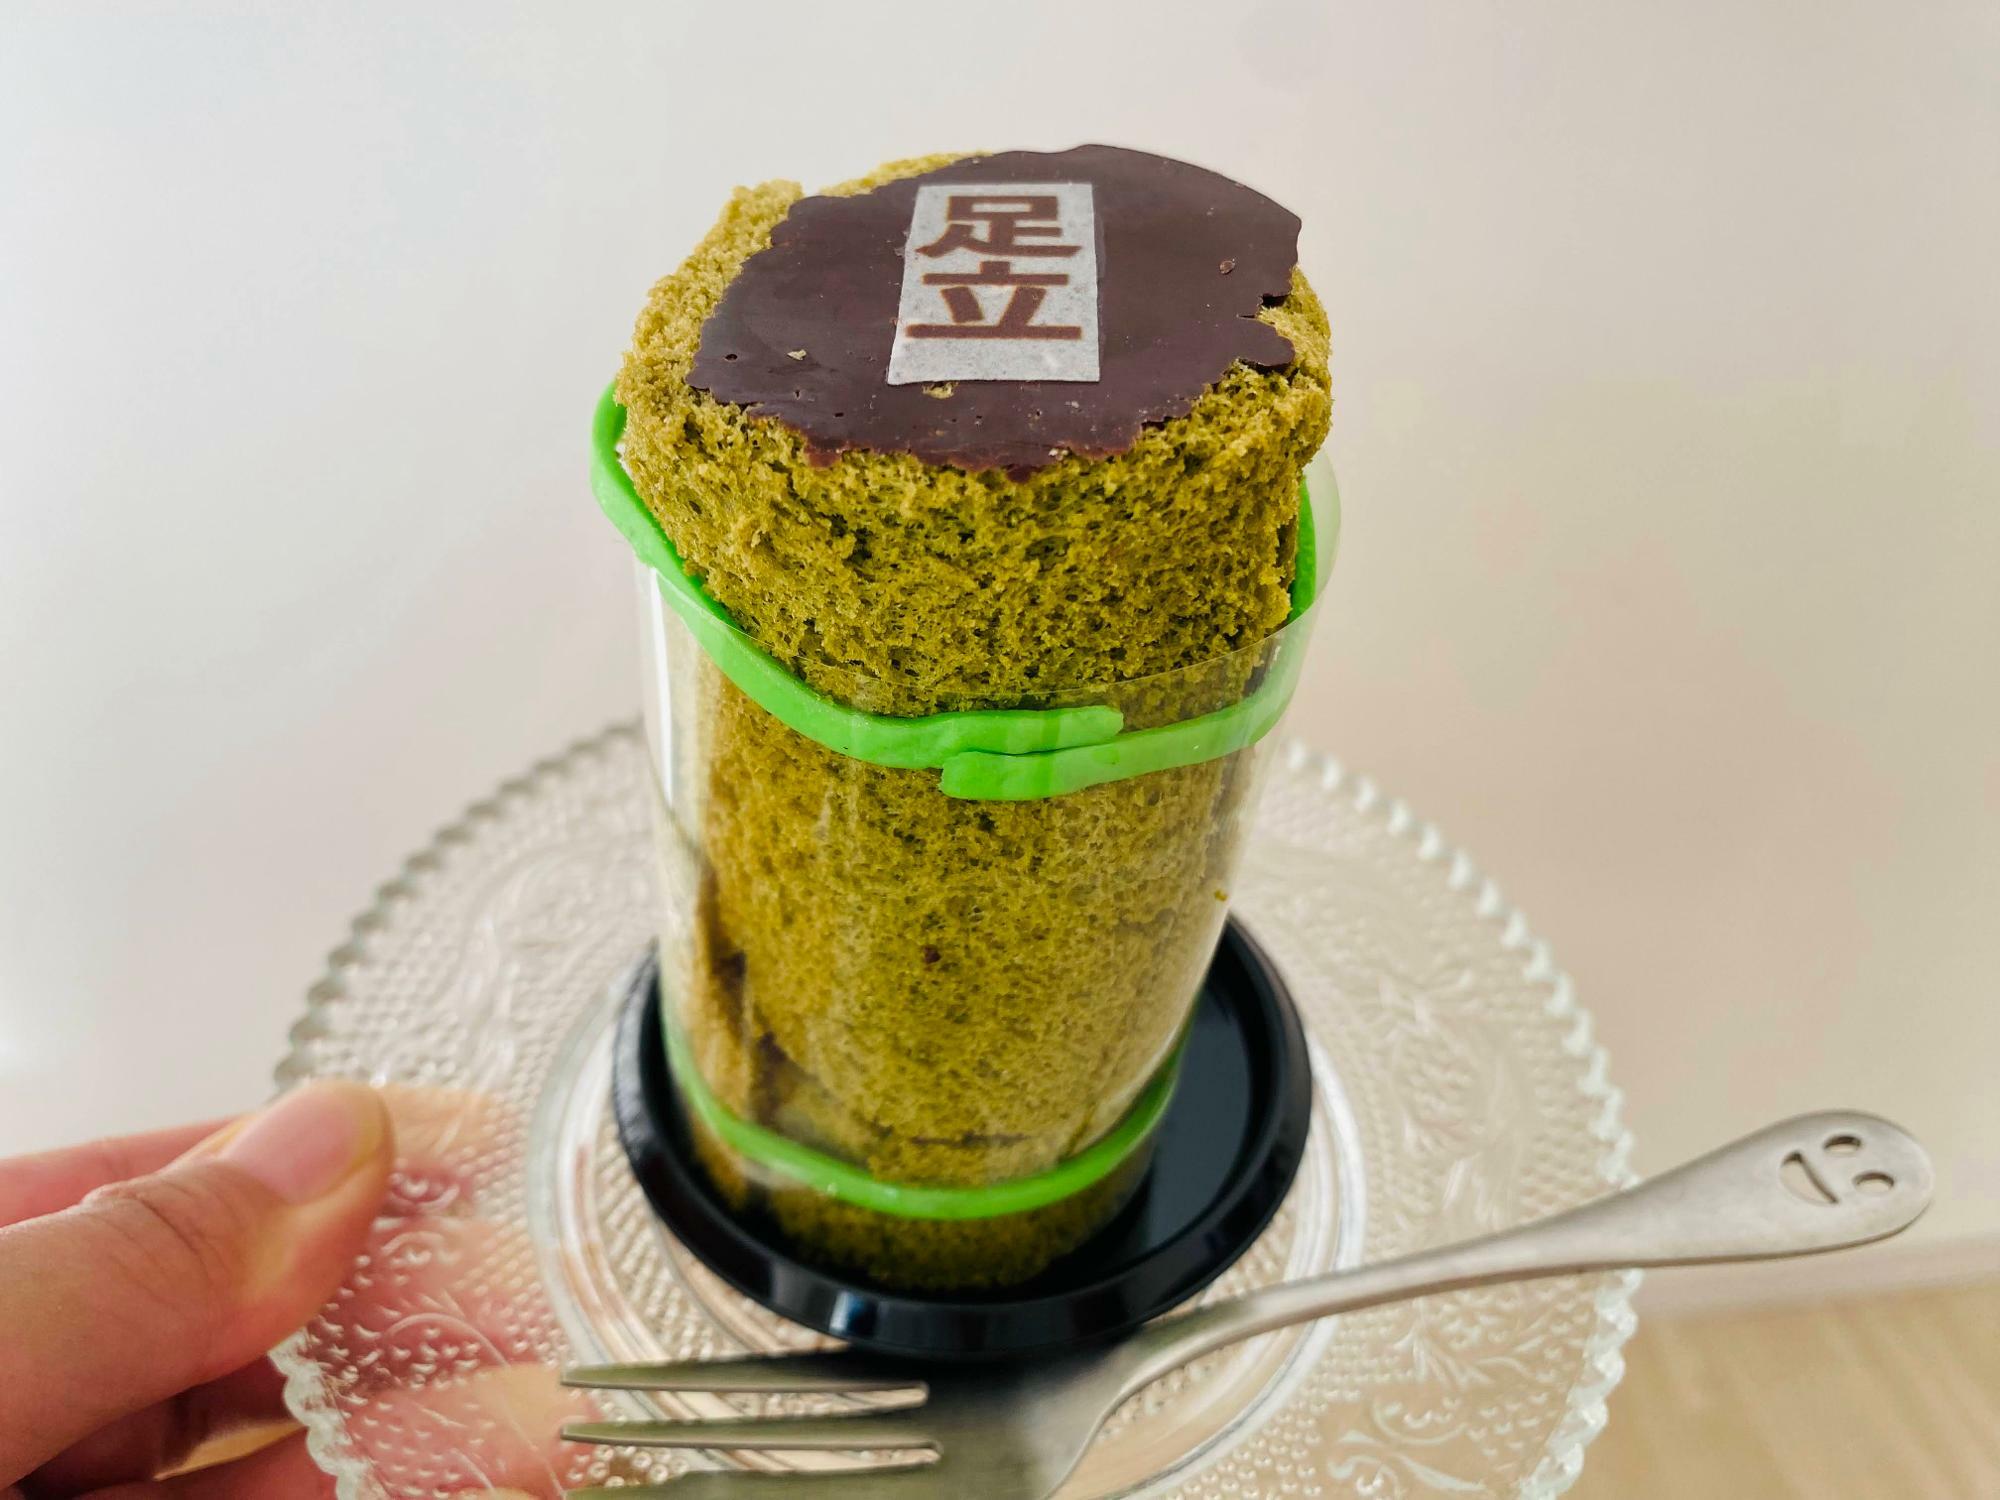 2022年グランプリの「竹取抹茶ケーキ」　てっぺんには「足立」の文字